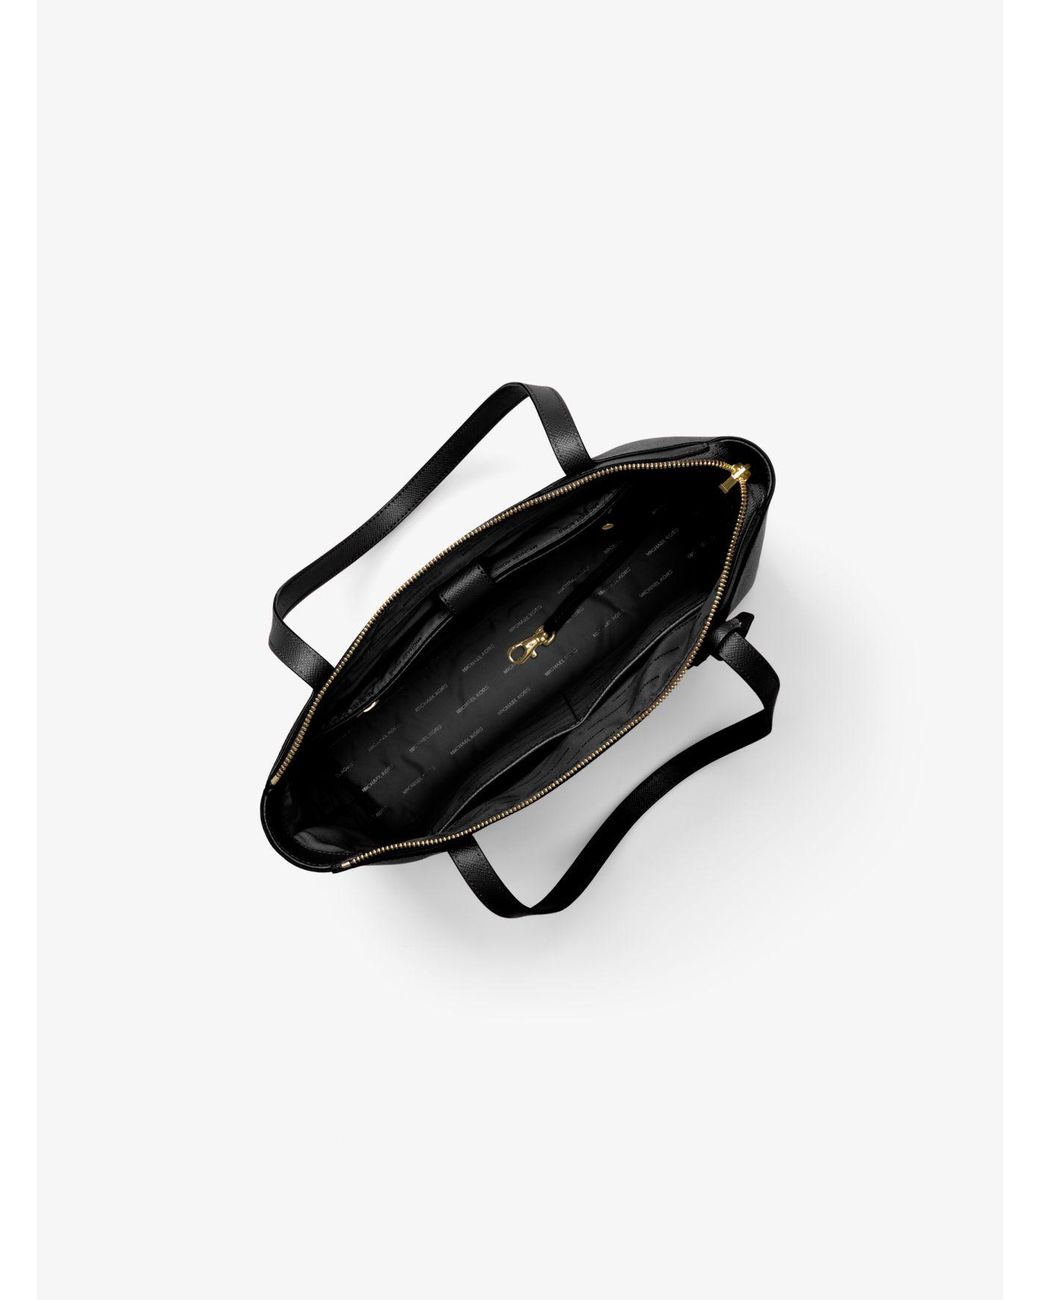 Michael Kors Maddie Medium Crossgrain Leather Tote Bag in Black | Lyst